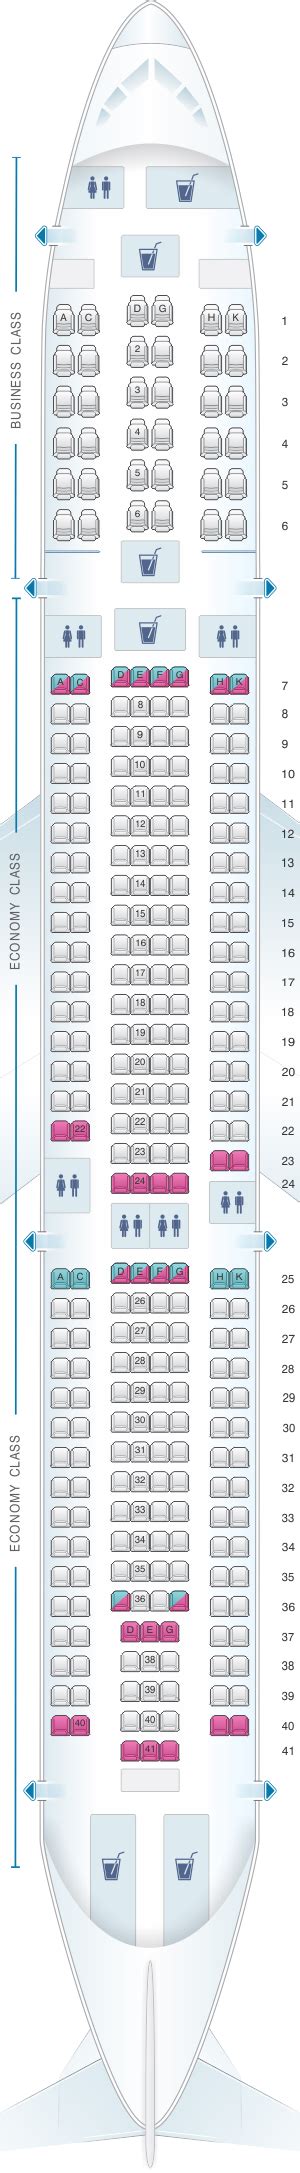 Seat Map Egyptair Airbus A330 300 Seatmaestro